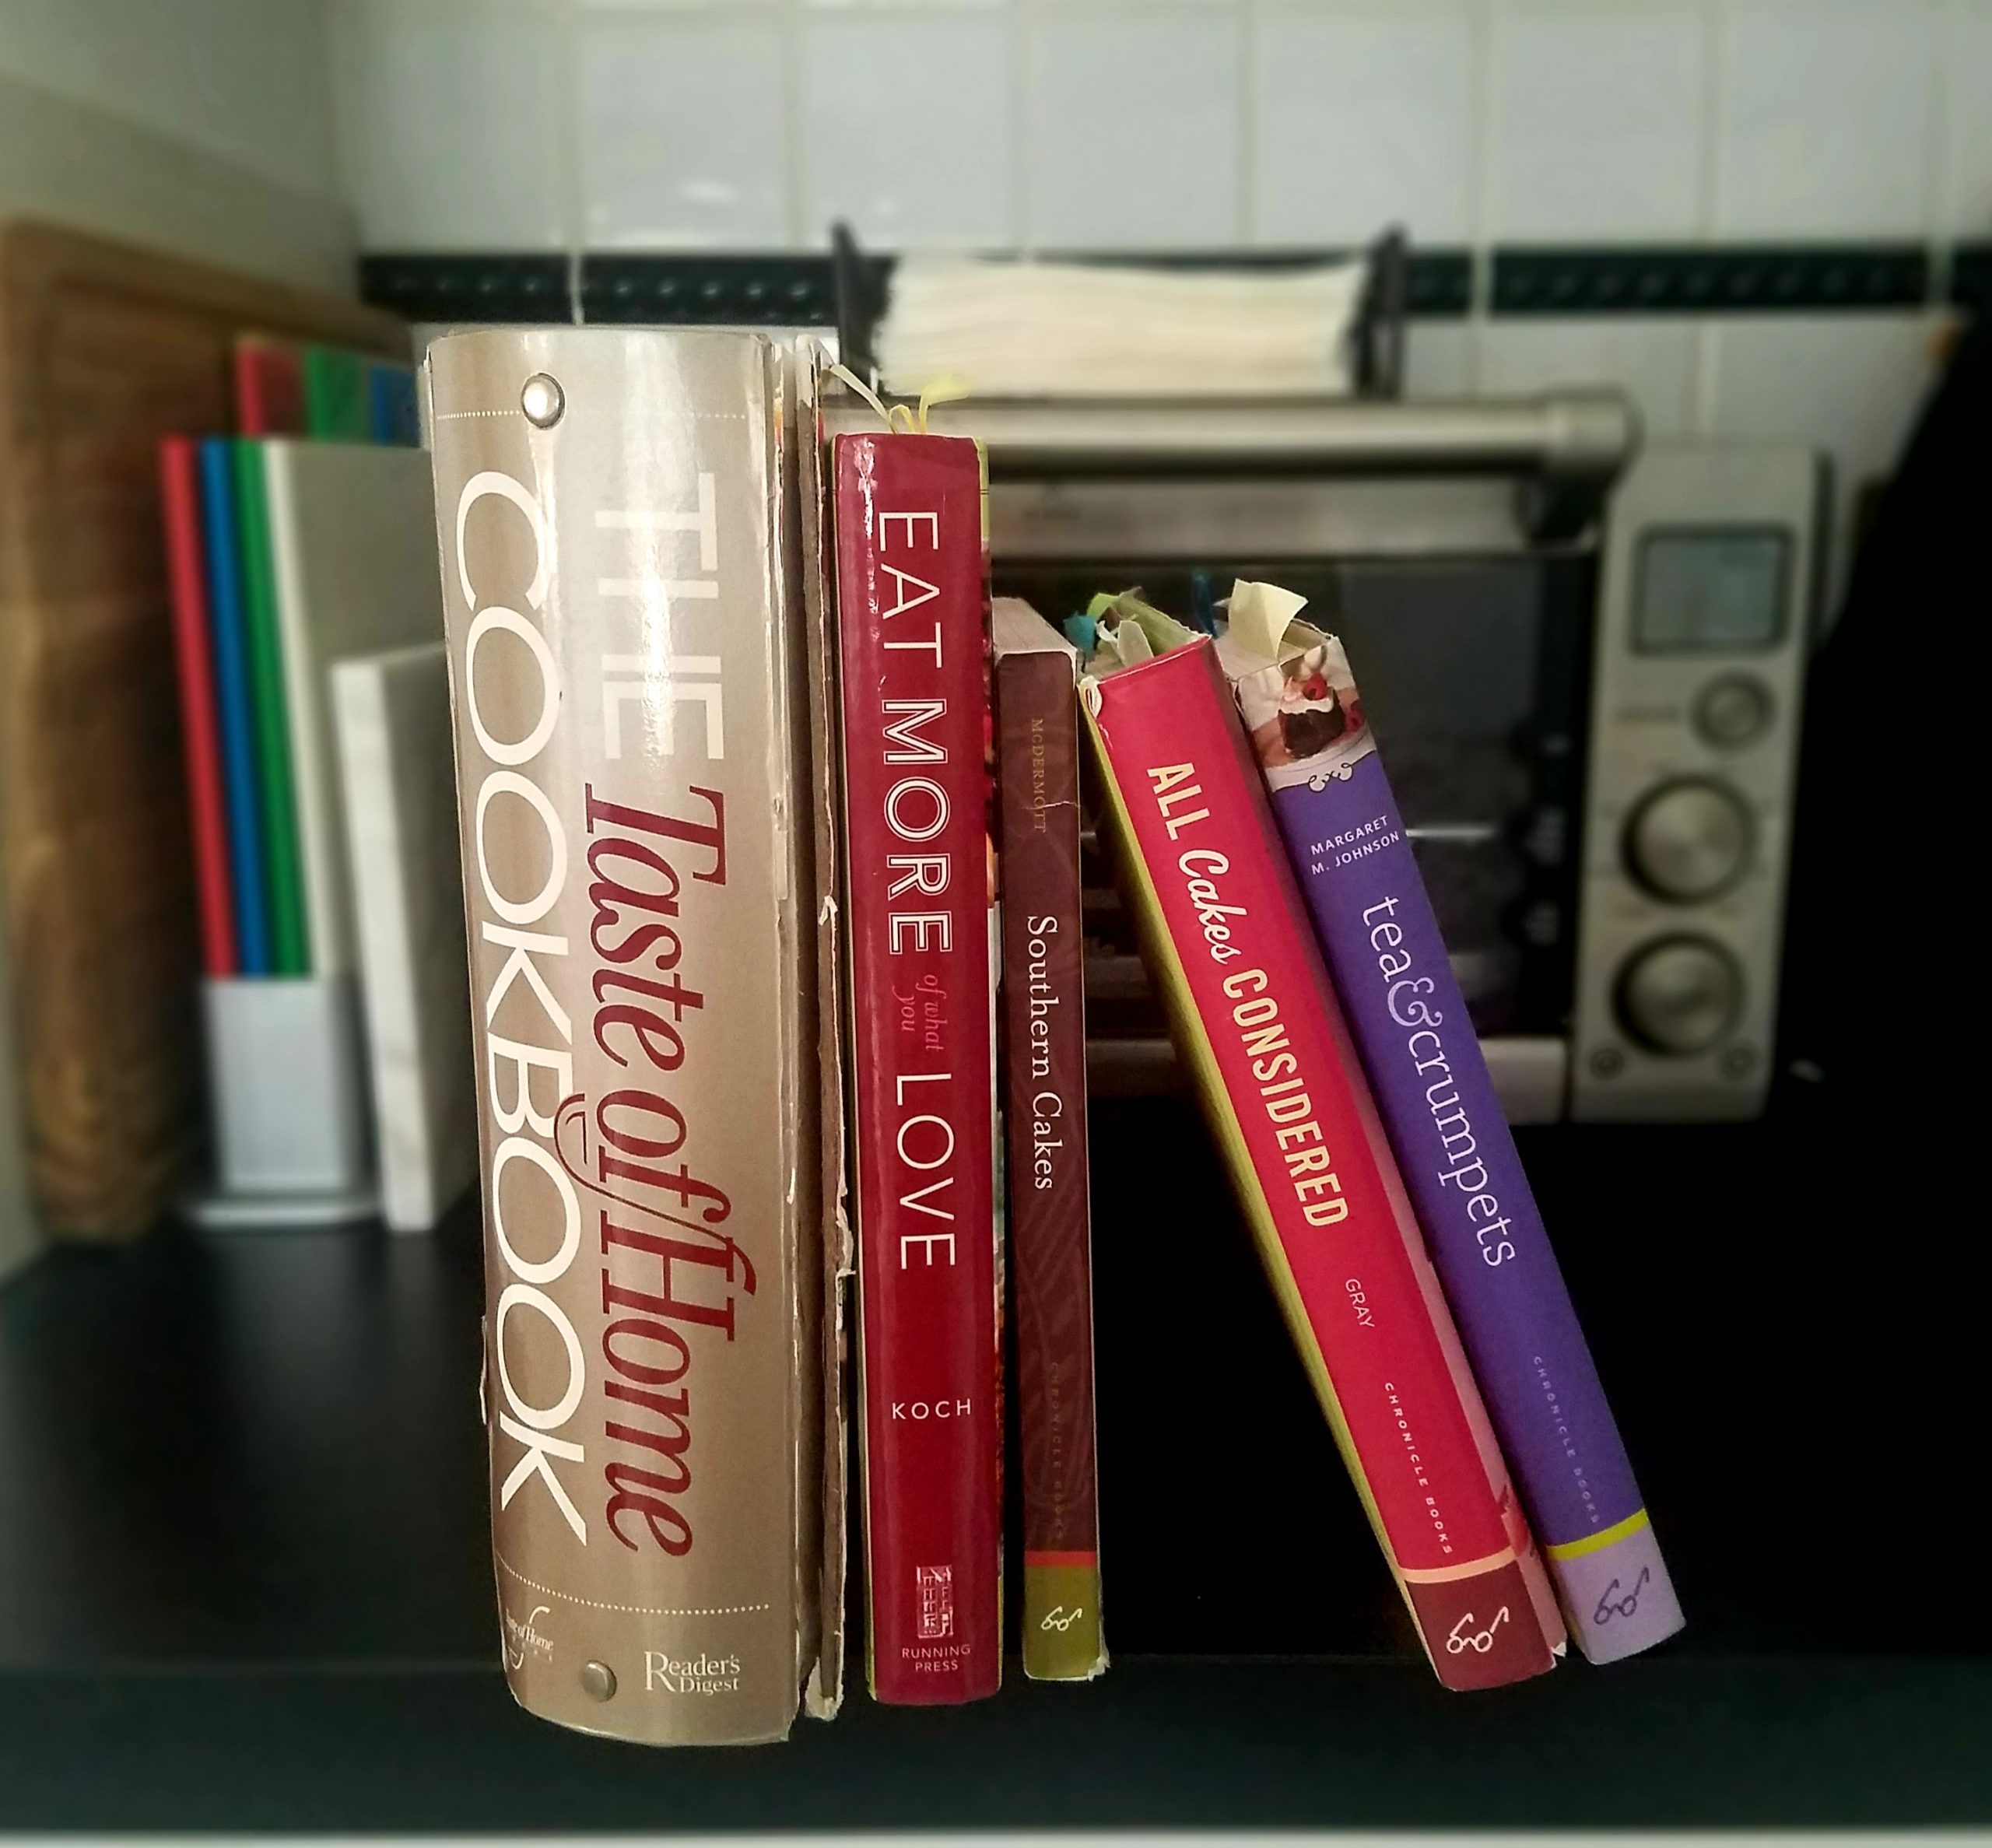 Quick Look Books: Cookbooks (December 2019)